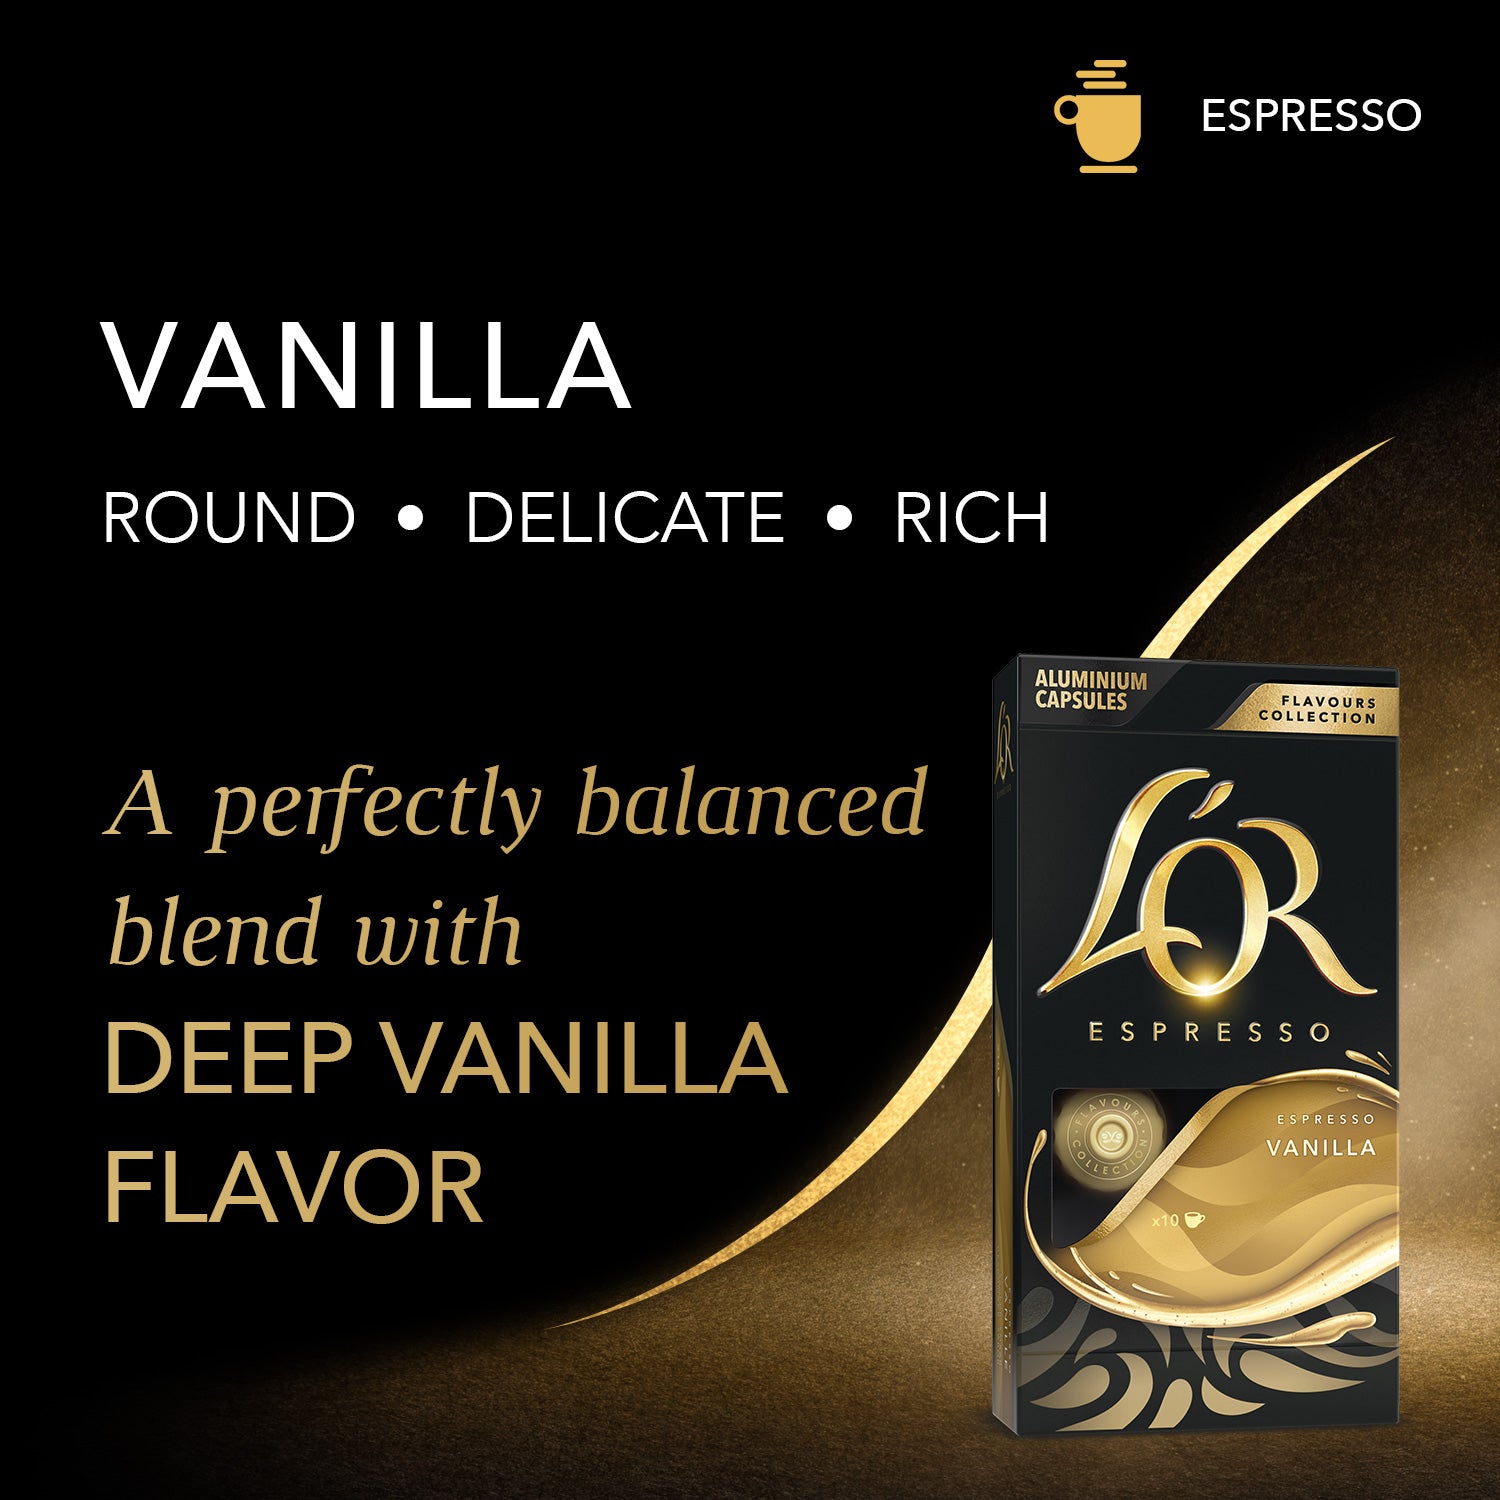 L'OR Vanilla Espresso is round, delicate, and rich.